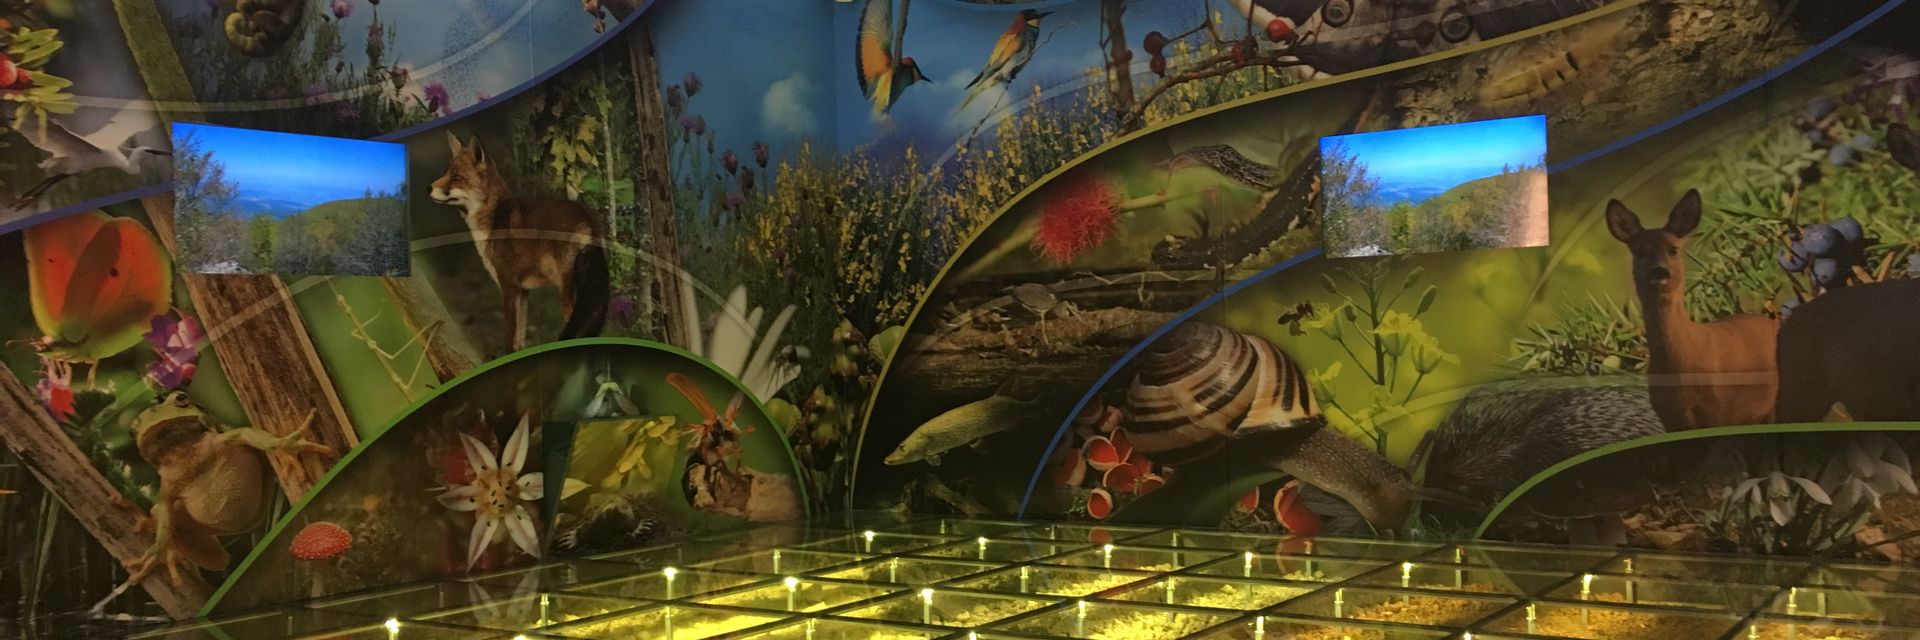 Museo de la Biodiversidad